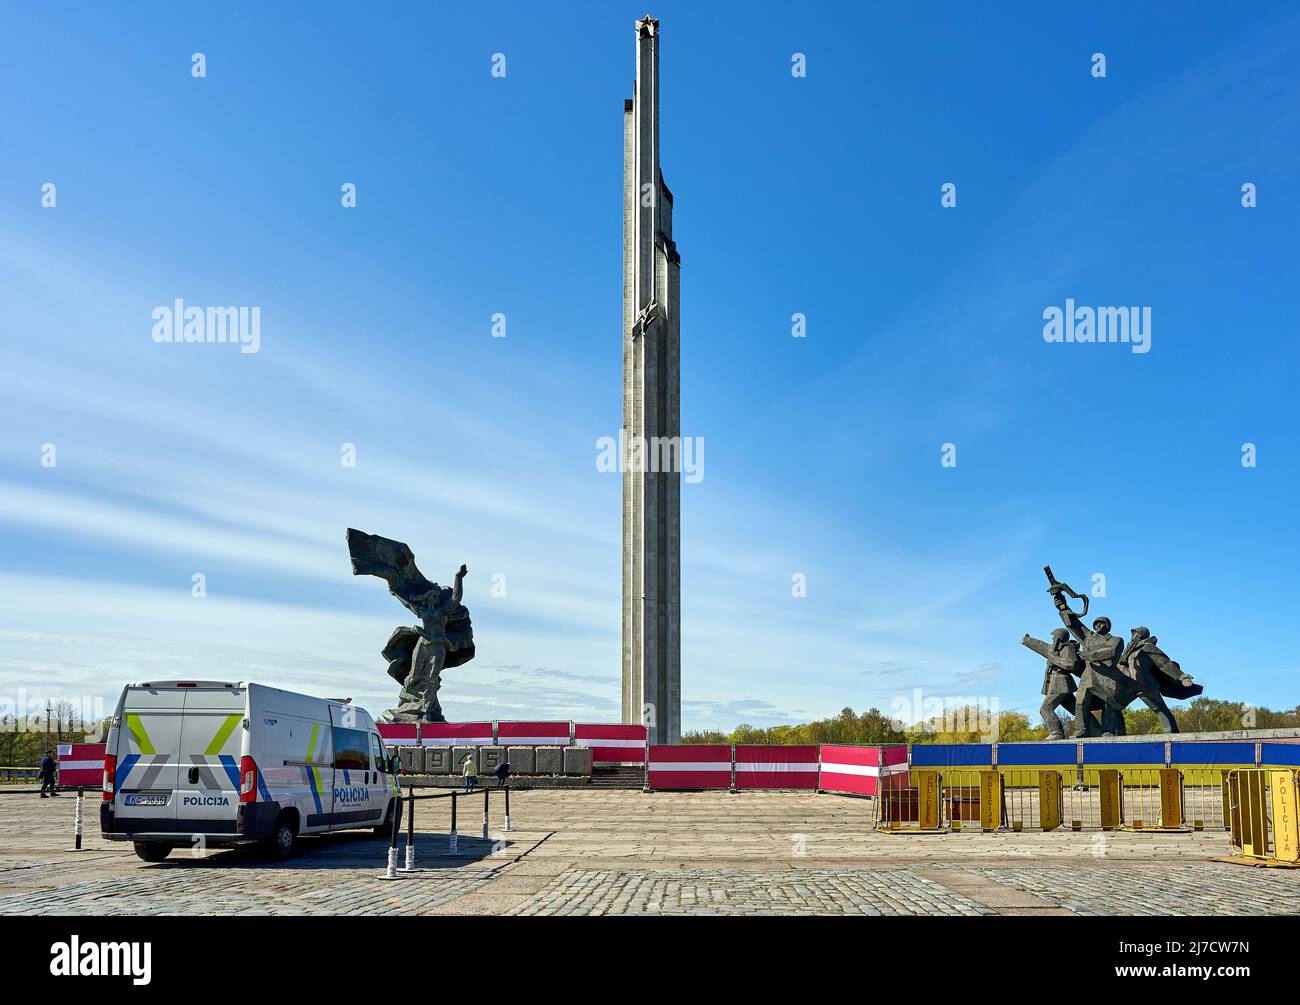 RIGA, LETTONIA - 8 maggio 2022: Parco della vittoria (parchi Uzvars) decorato con bandiere lettoni e ucraine. La polizia è in servizio. Foto Stock